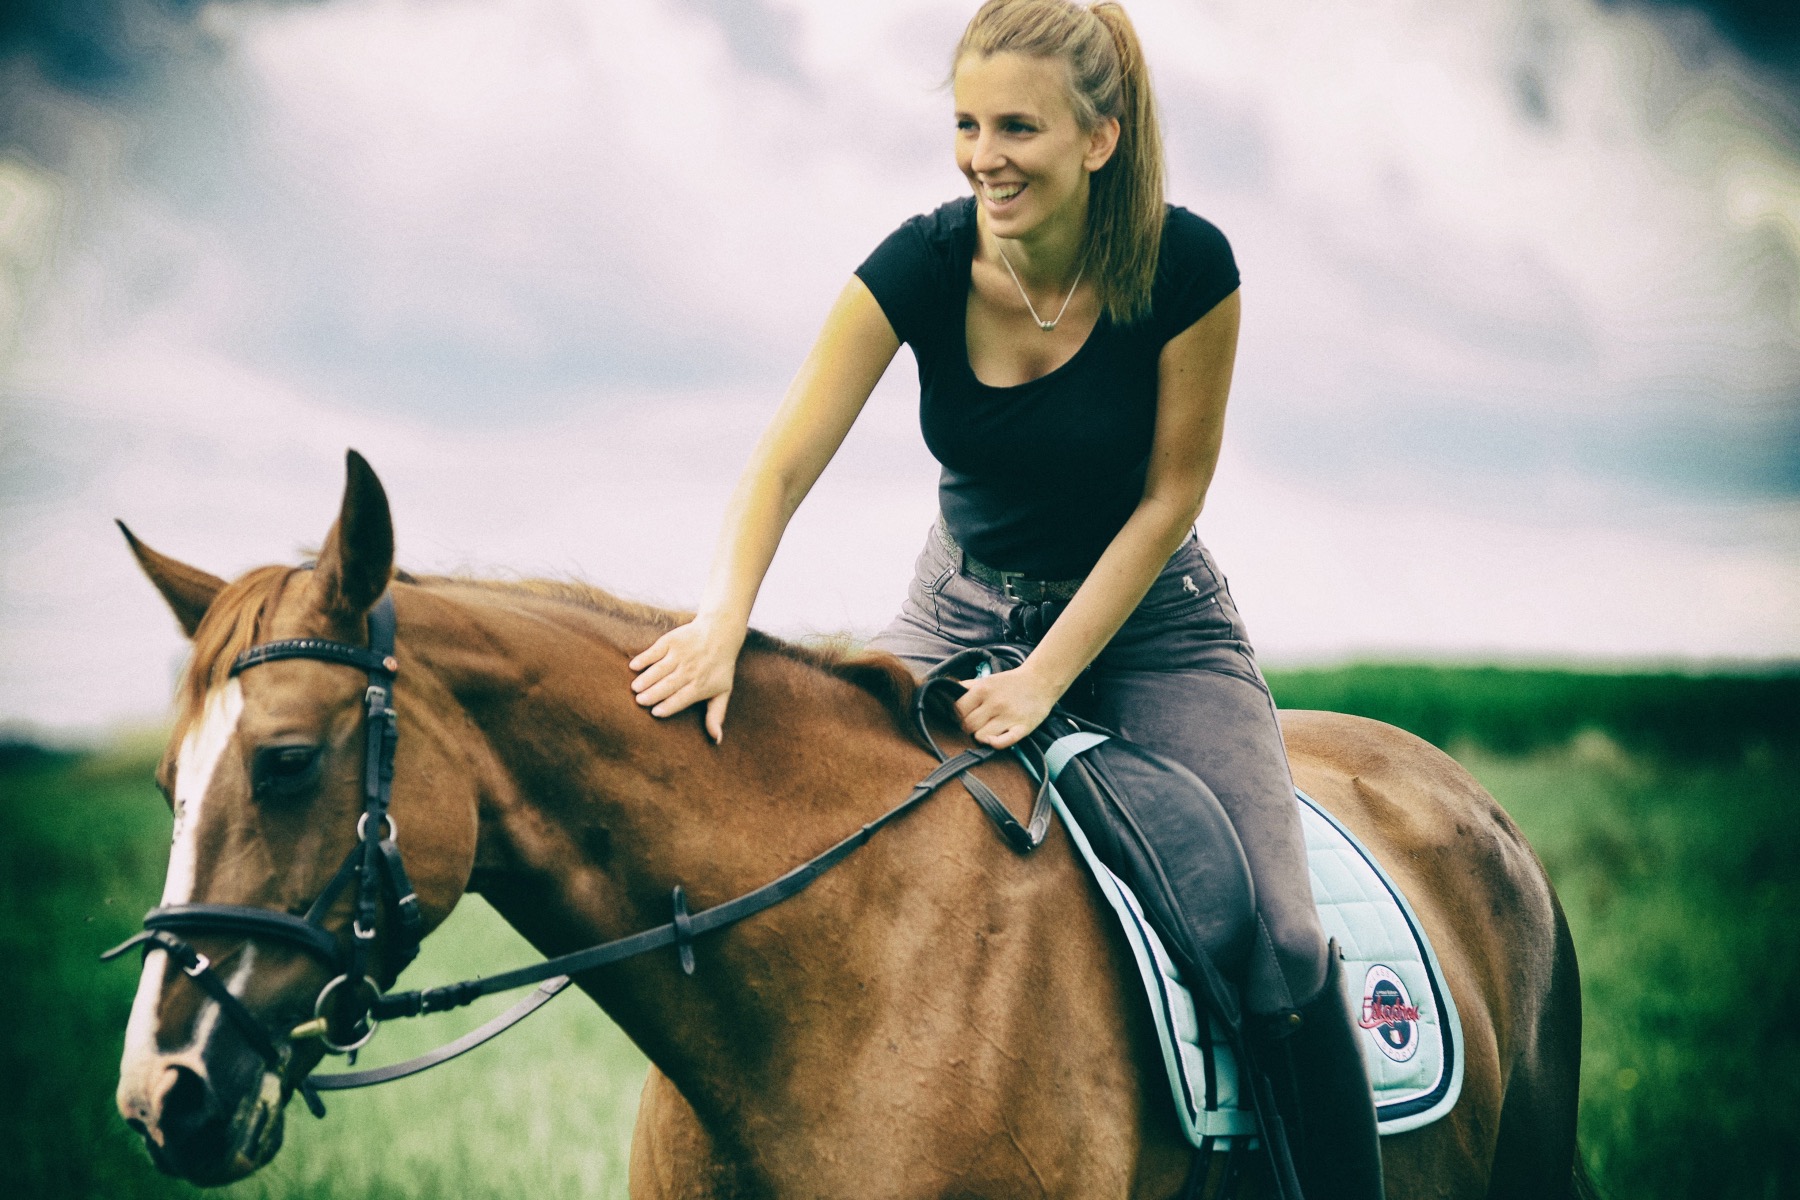 Mensch und Pferd nehmen ihre Umwelt ganz unterschiedlich wahr doch eines ist bei beiden ausschlaggebend für den Beziehungsaufbau Vertrauen! – ©Unsplash